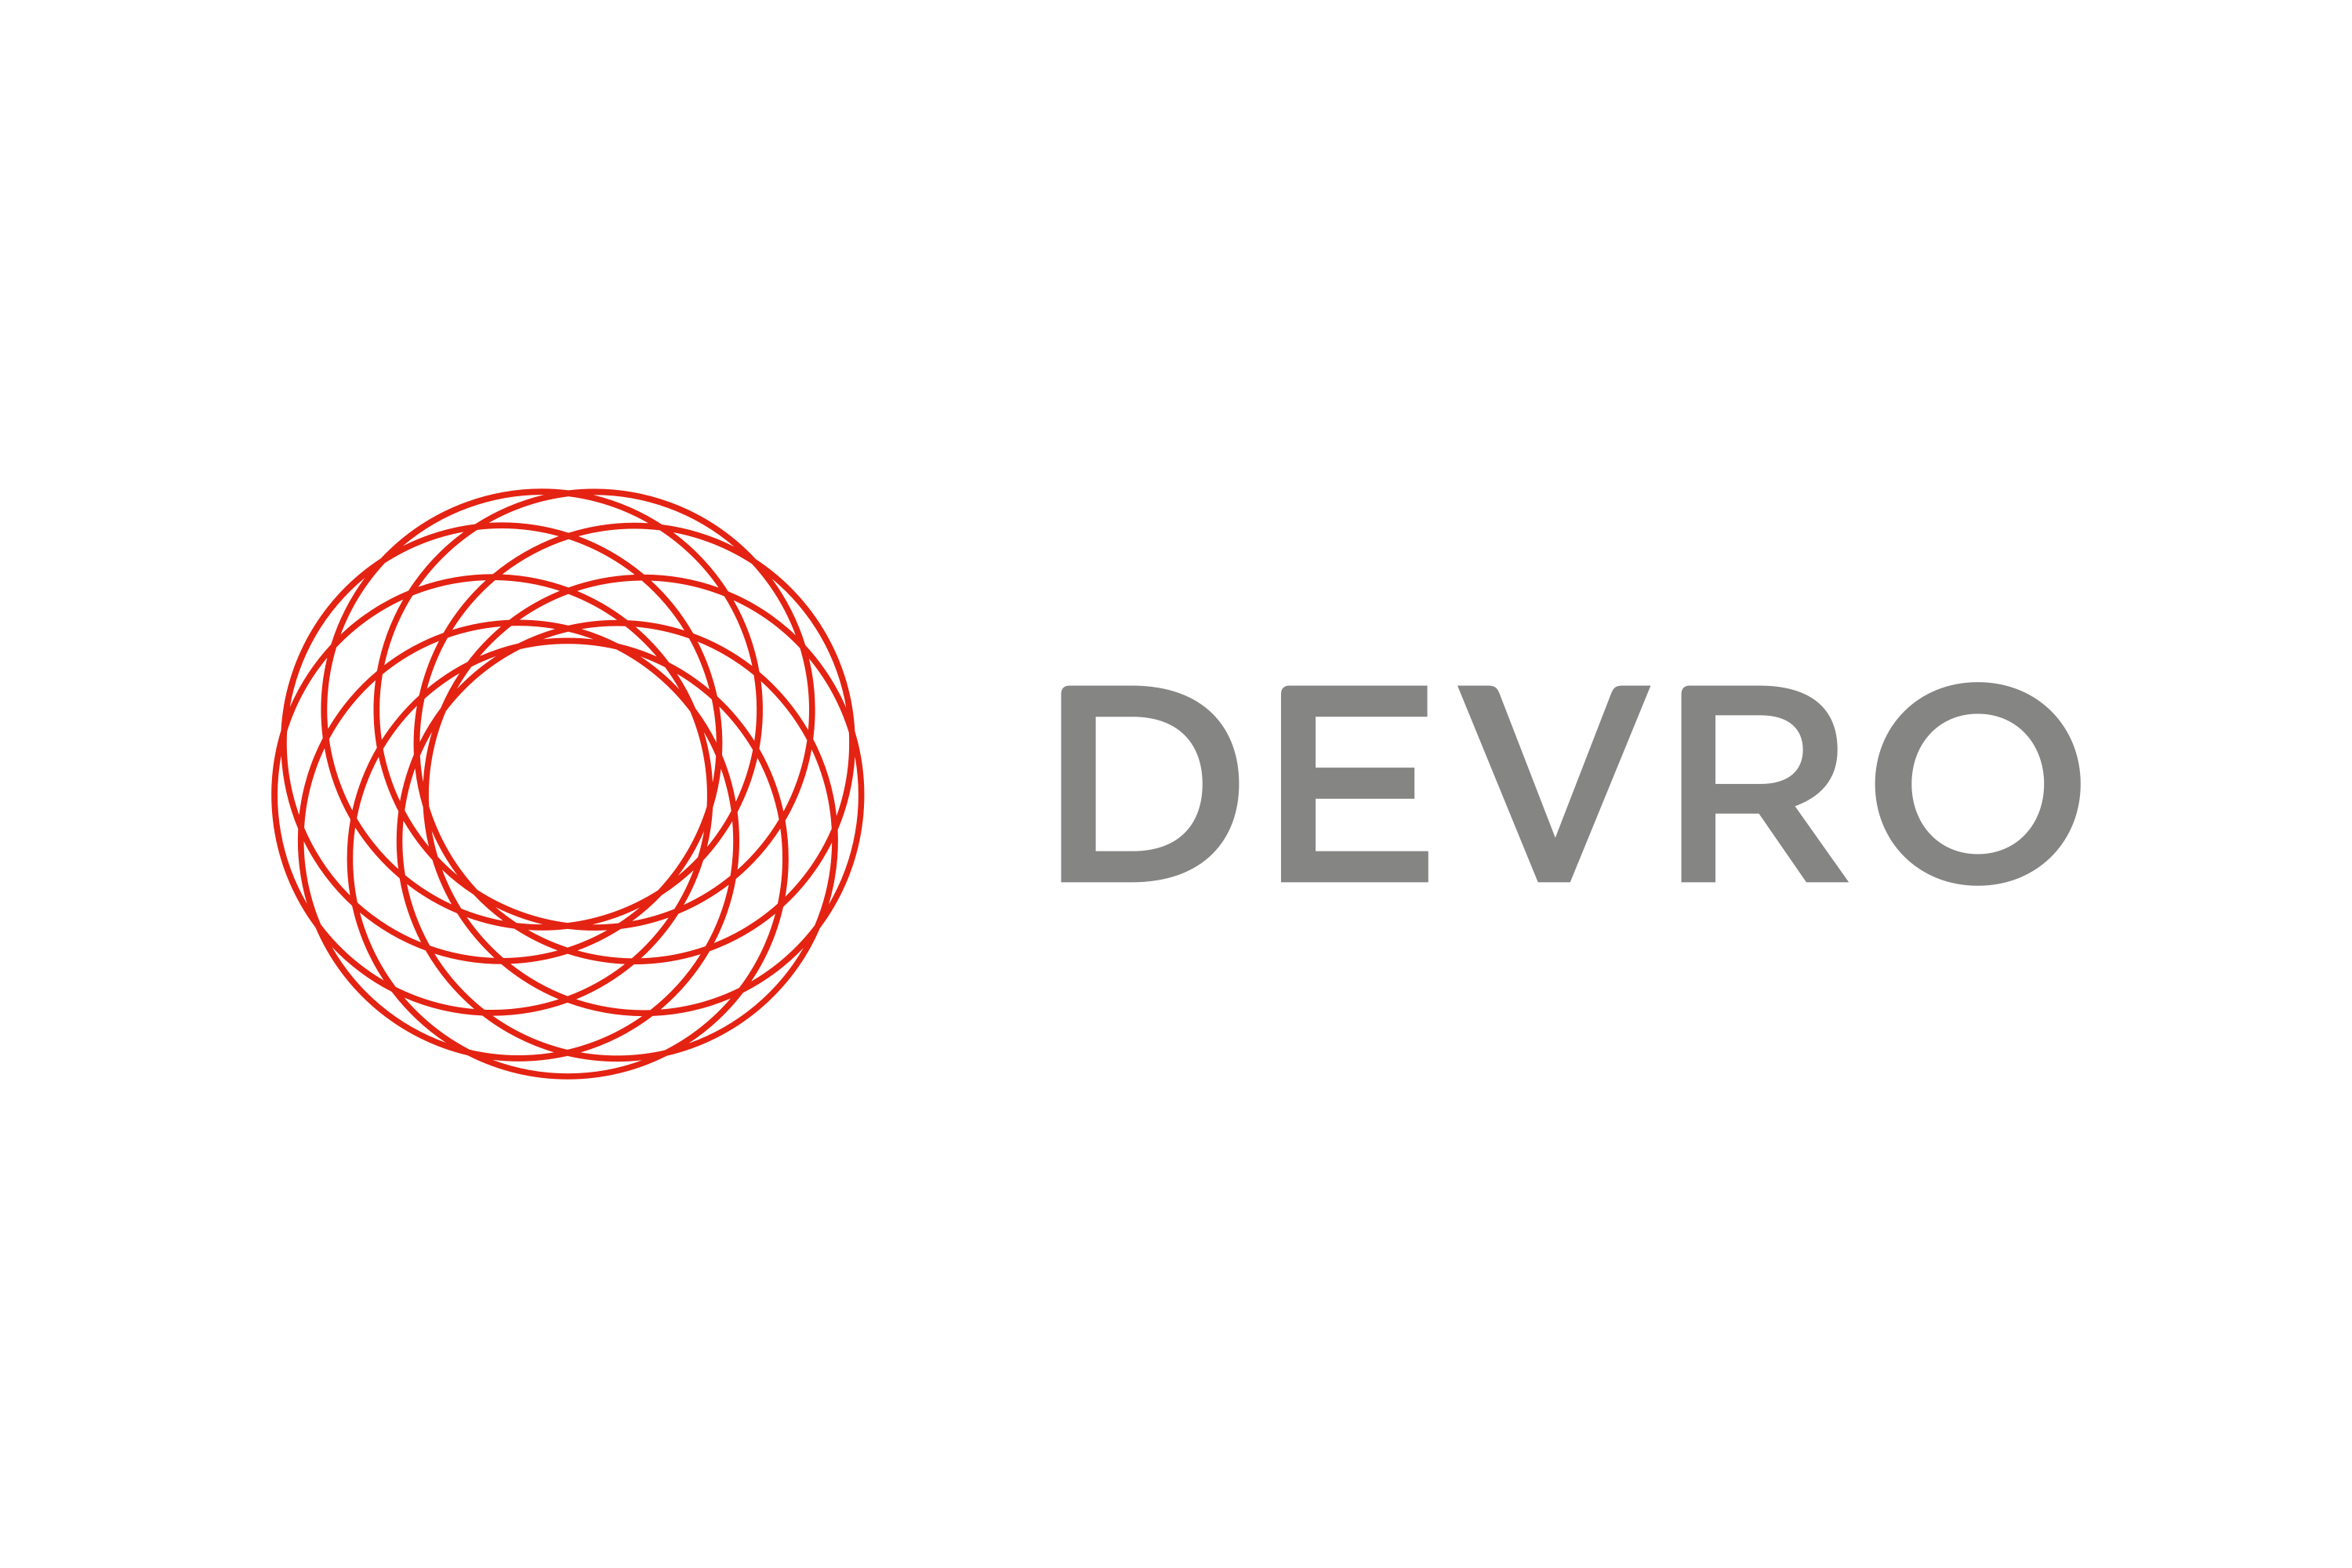 Download Devro Logo in SVG Vector or PNG File Format - Logo.wine